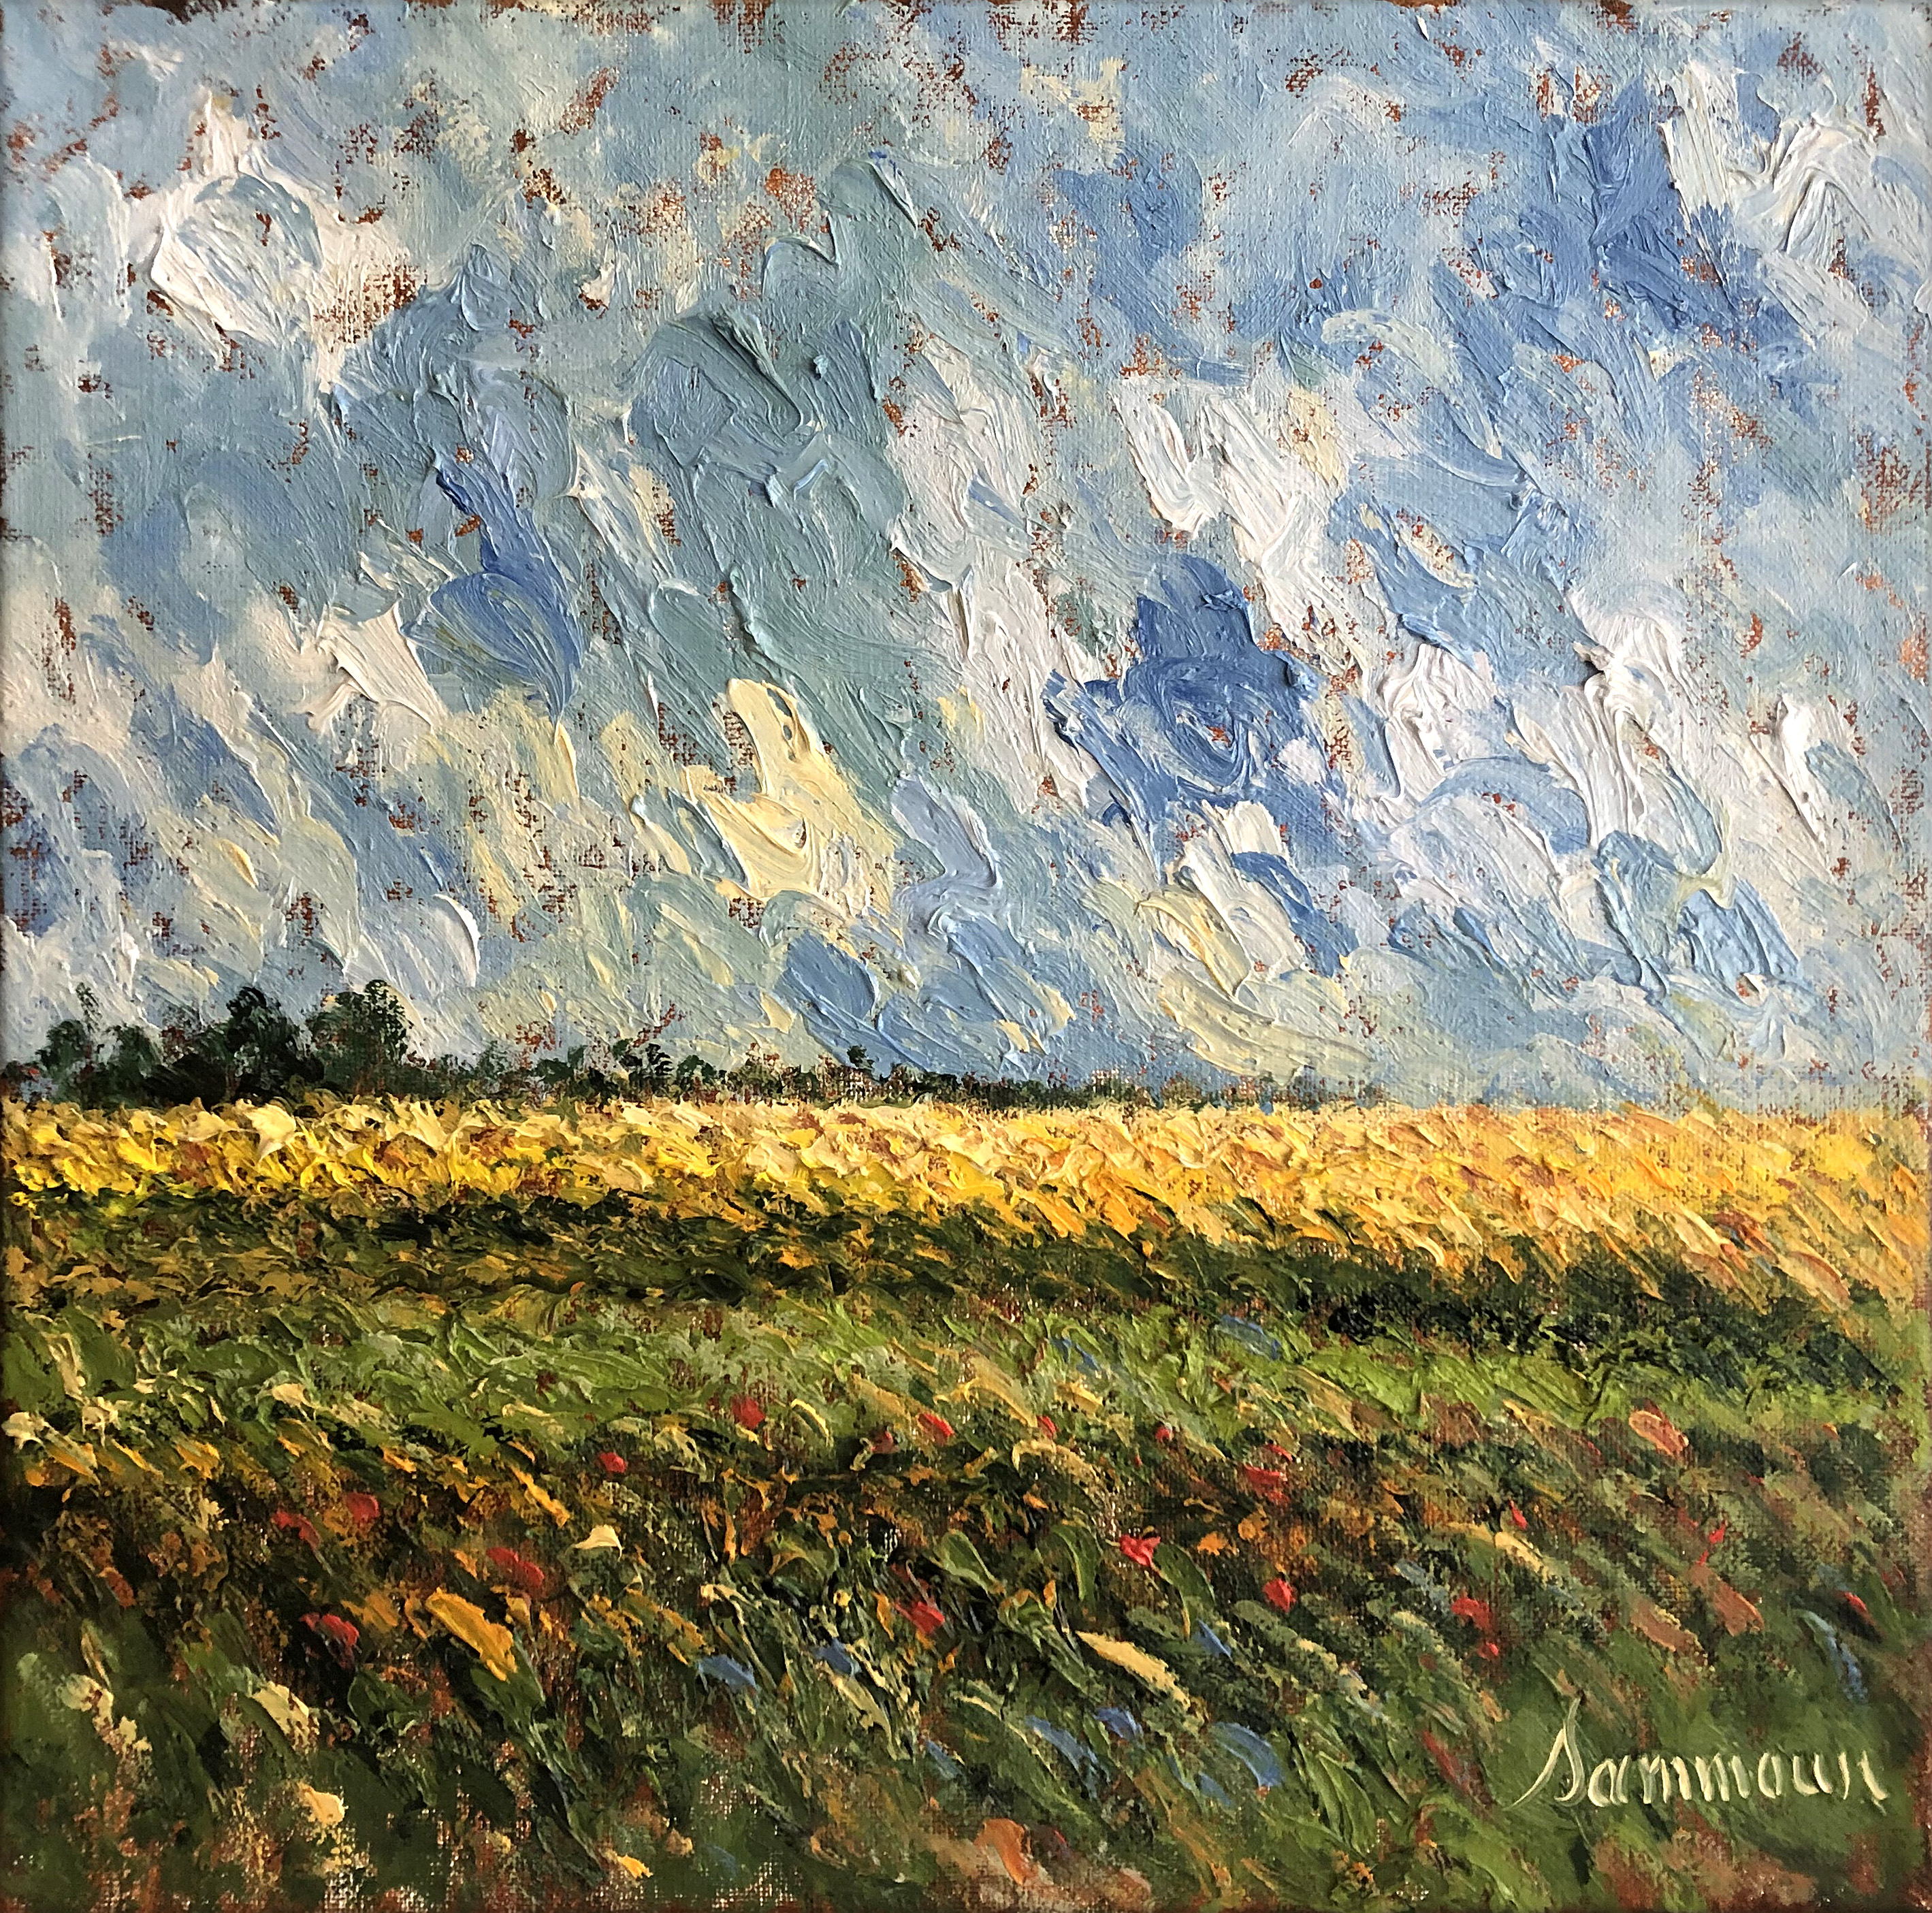 SAMIR SAMMOUN - Mustard Field - Oil on Canvas - 16 x 16 inches